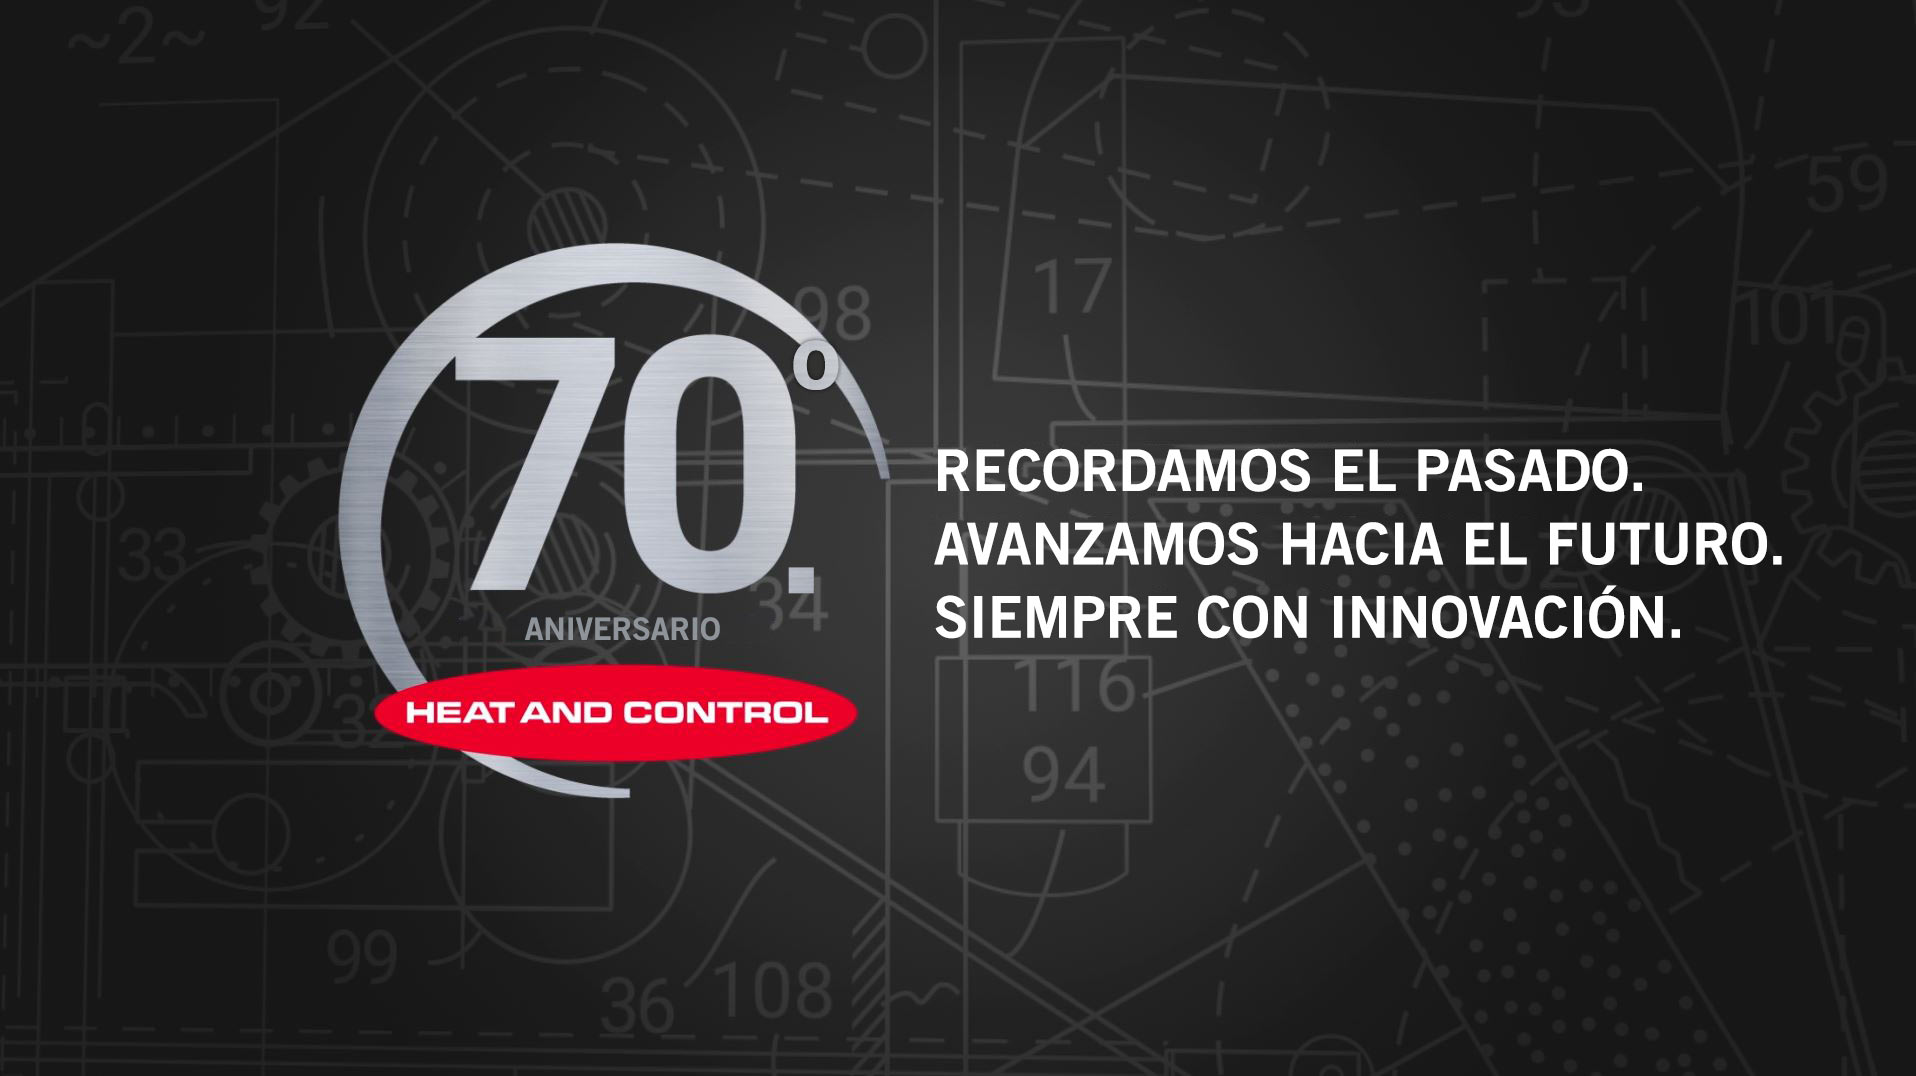 Video del aniversario del 70 aniversario de Heat and Control